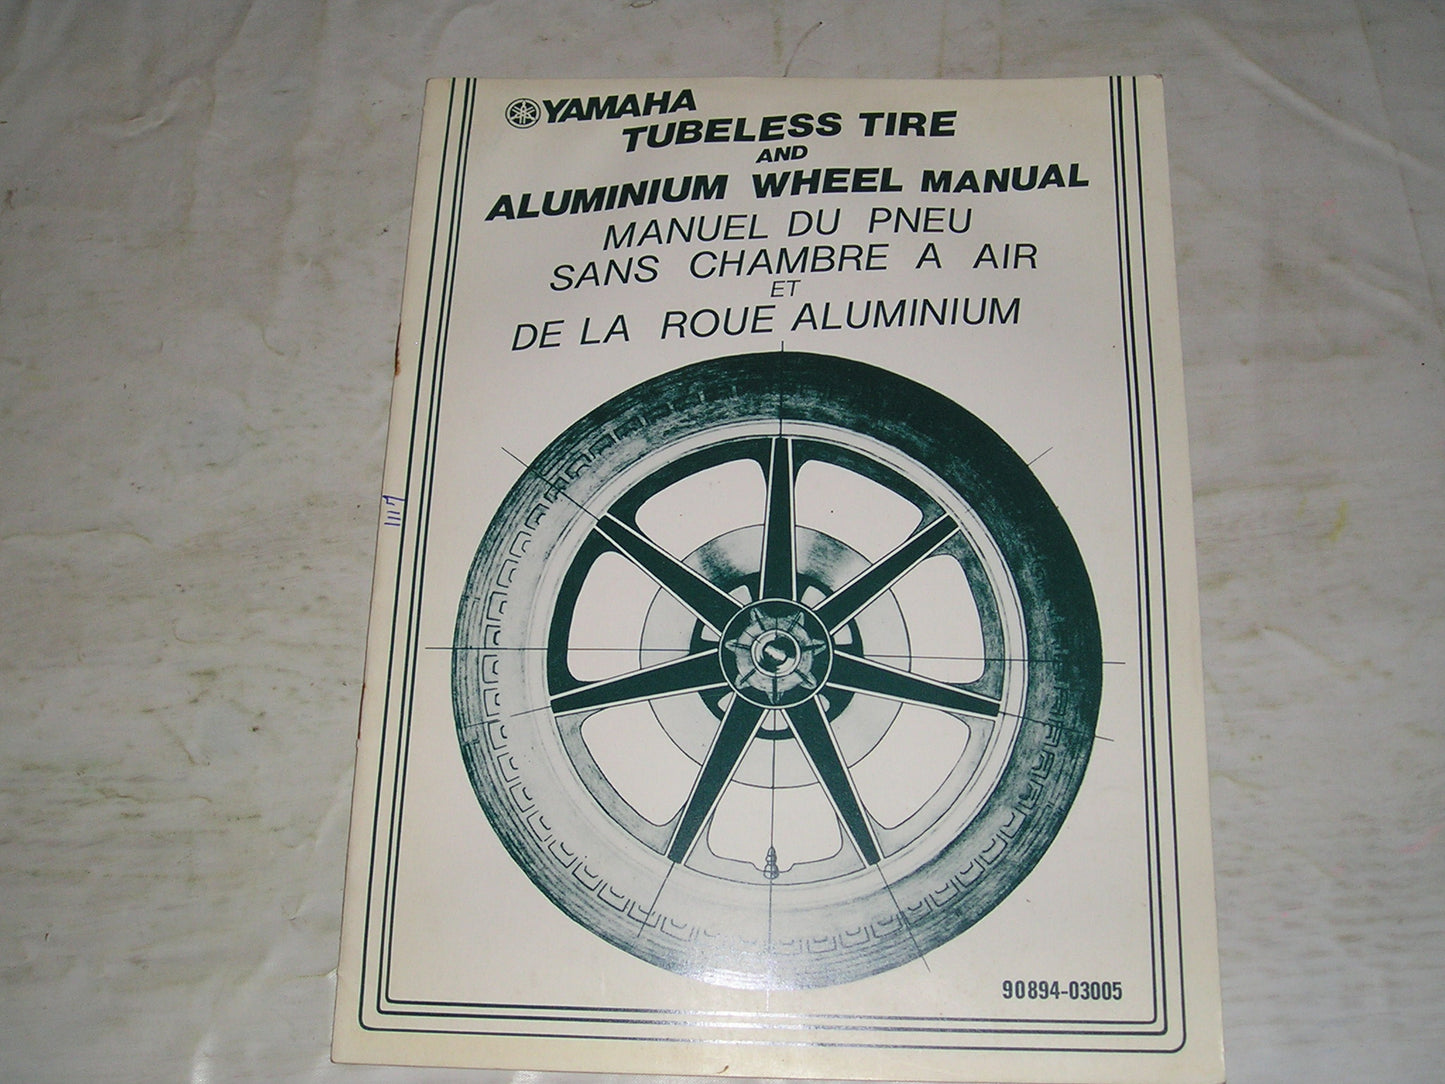 YAMAHA 1979  Tubeless Tire  &  Aluminium Wheel   Service Manual  90894-03005  #1117